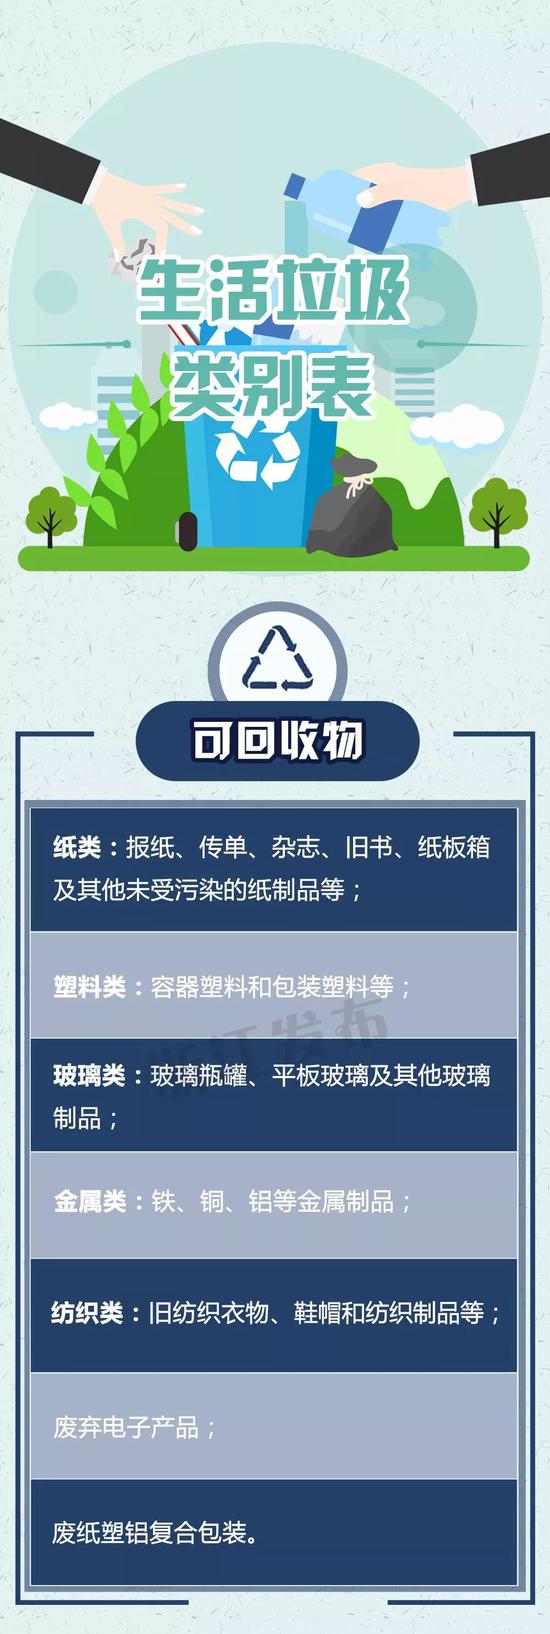 浙江垃圾分类：浙江生活垃圾分类标准发布，11月1日施行